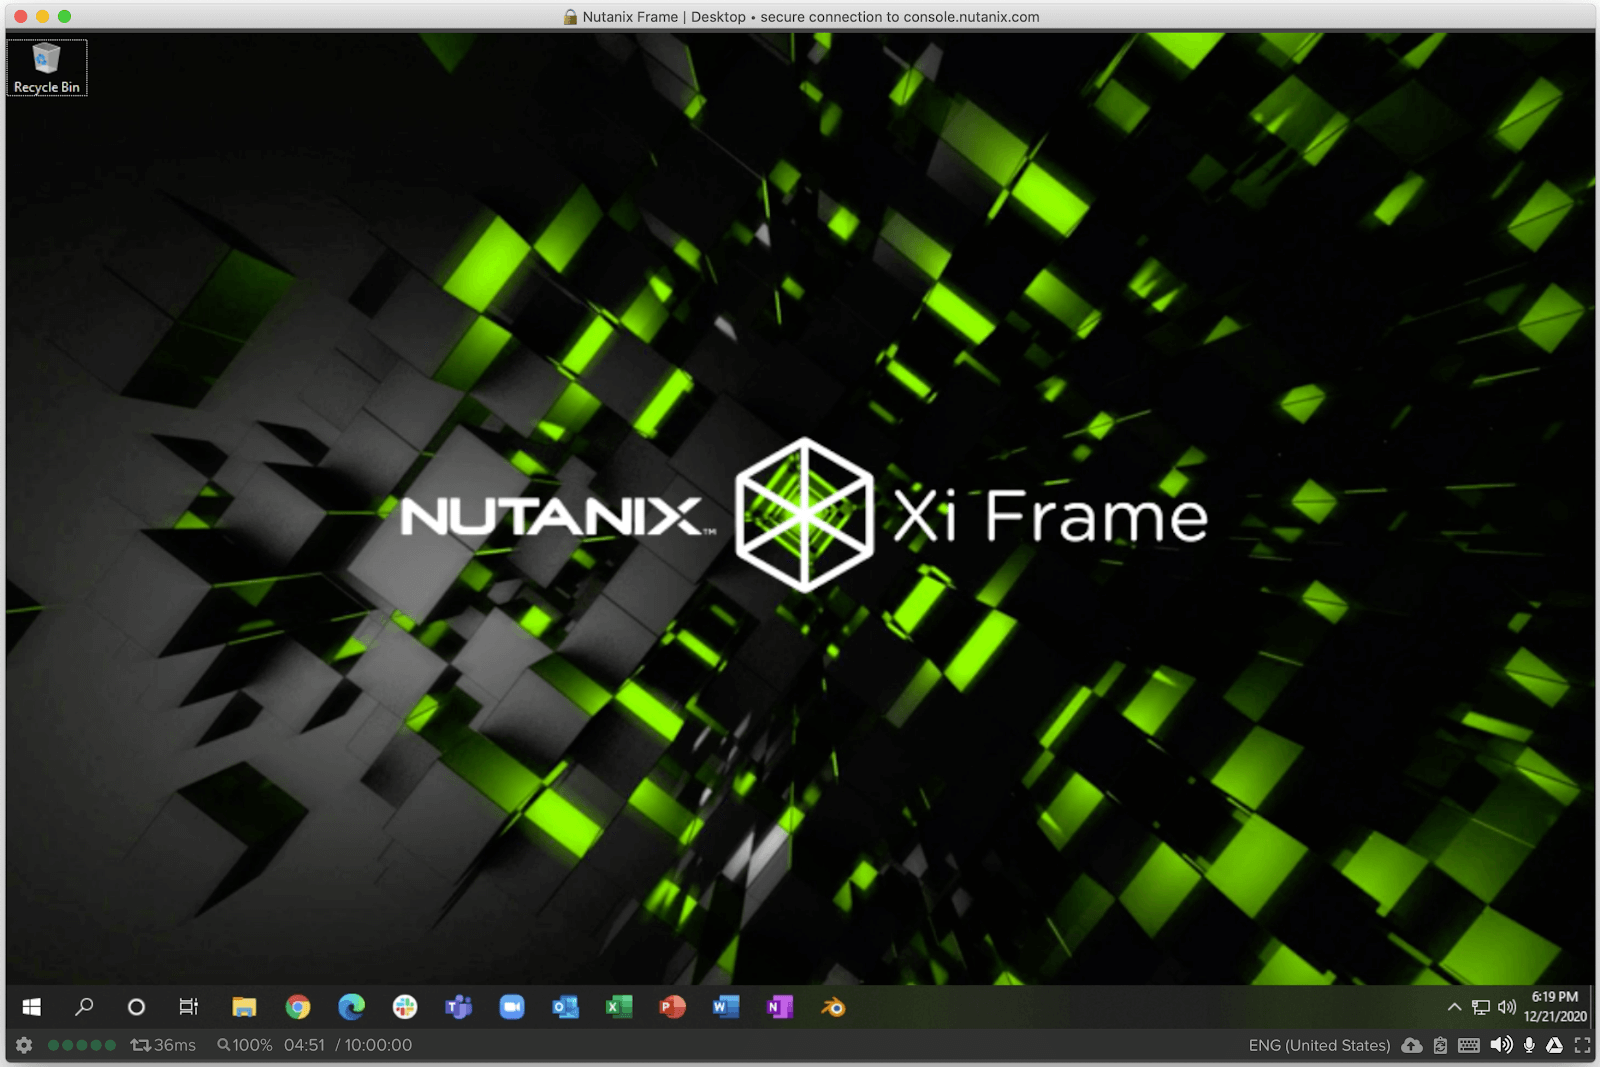 Frame Desktop Session via Frame App